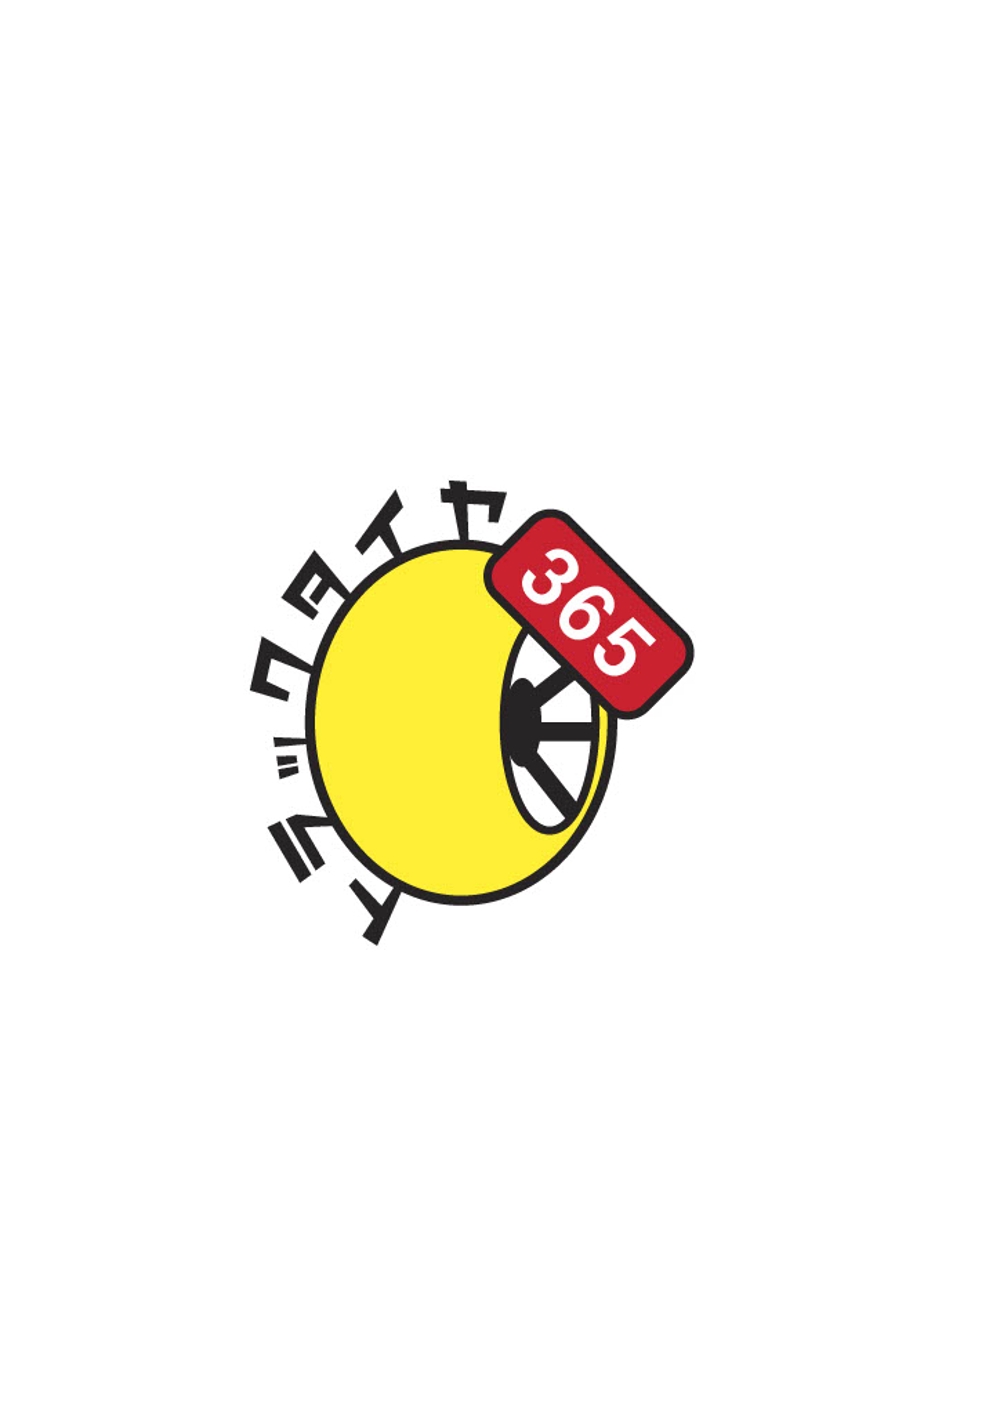 タイヤ出張交換サービス「トラックタイヤ365」ロゴ制作